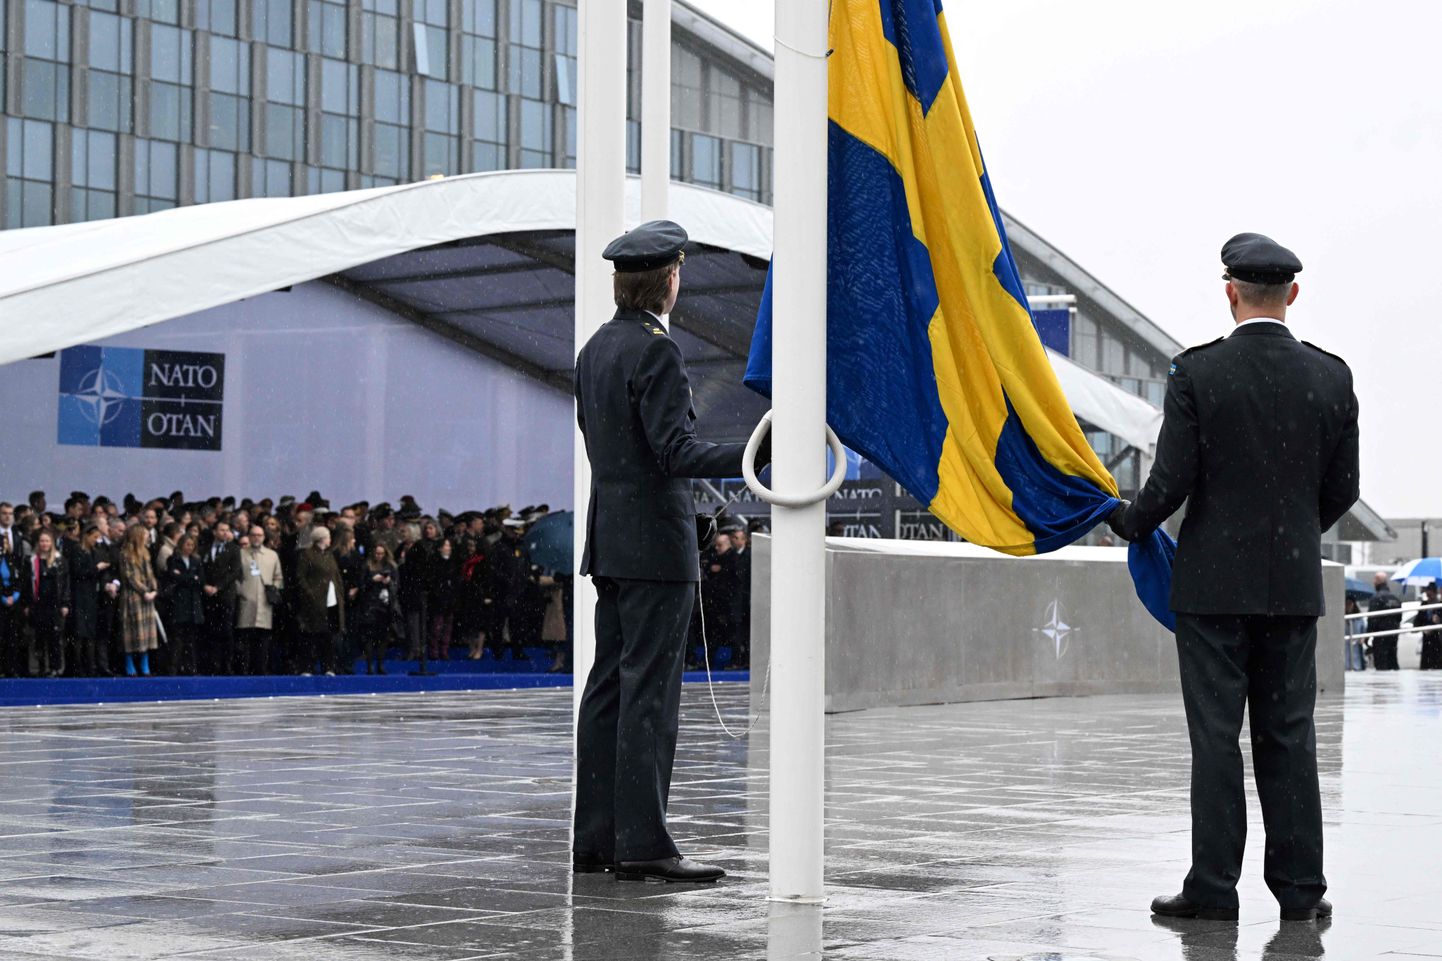 Официальные лица готовятся к поднятию флага Швеции во время церемонии вступления Швеции в НАТО в штаб-квартире Организации Североатлантического договора в Брюсселе 11 марта 2024 года.